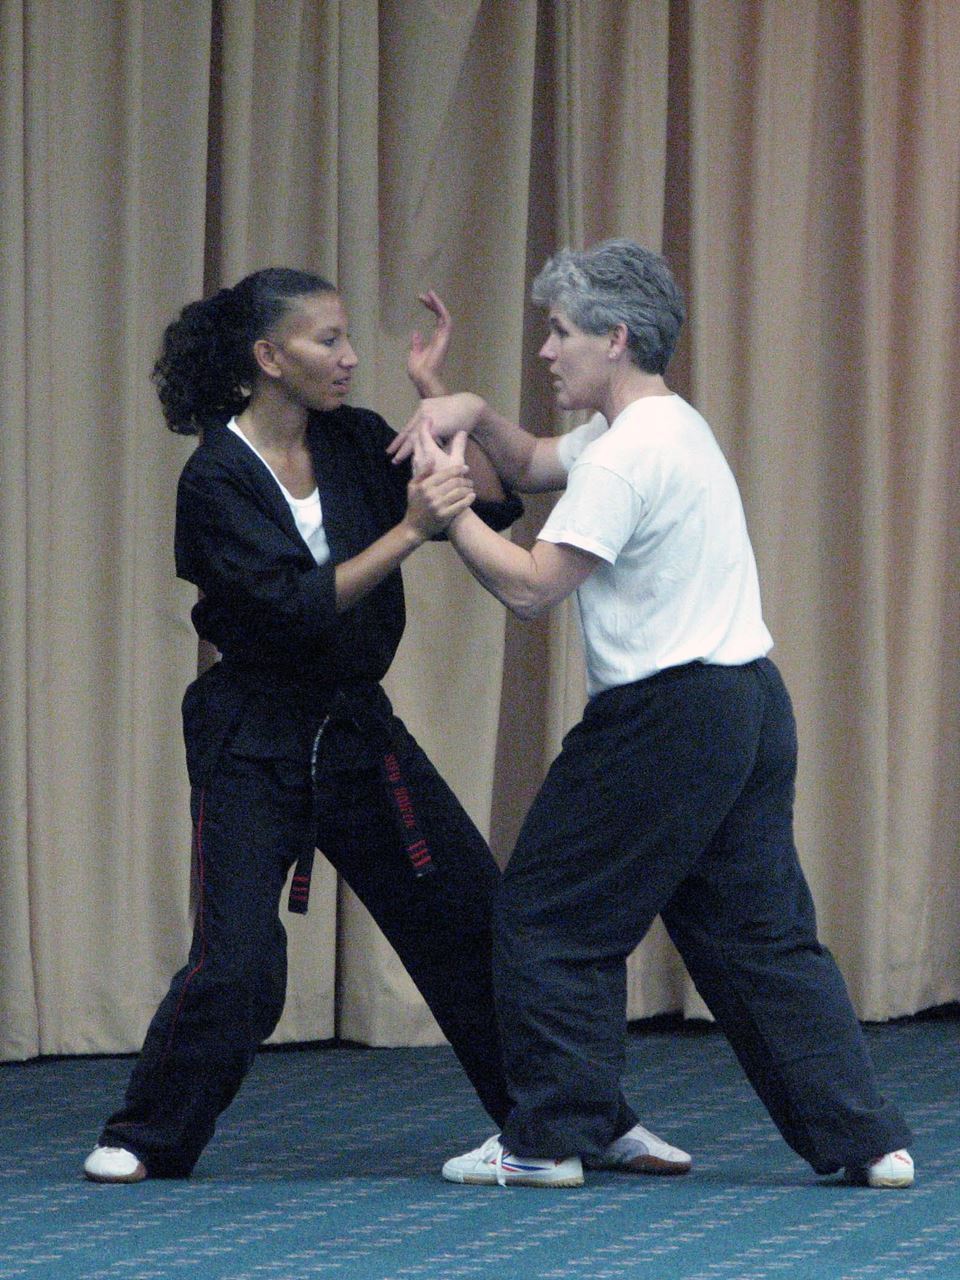 Sonia Richardson and Melinda Johnson, 2007